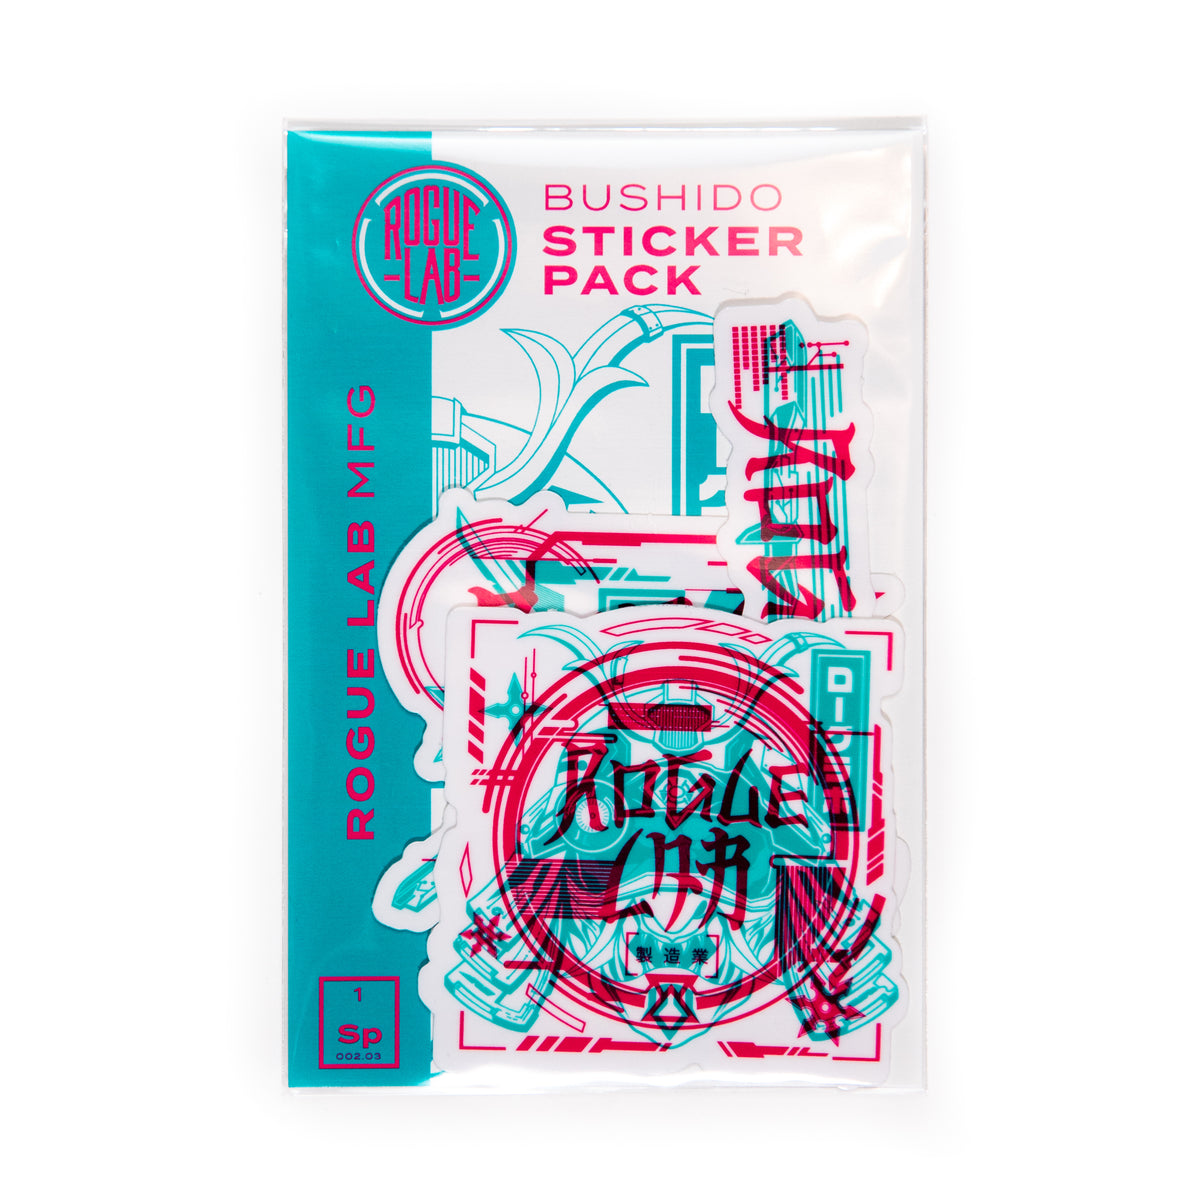 Bushido Sticker Pack